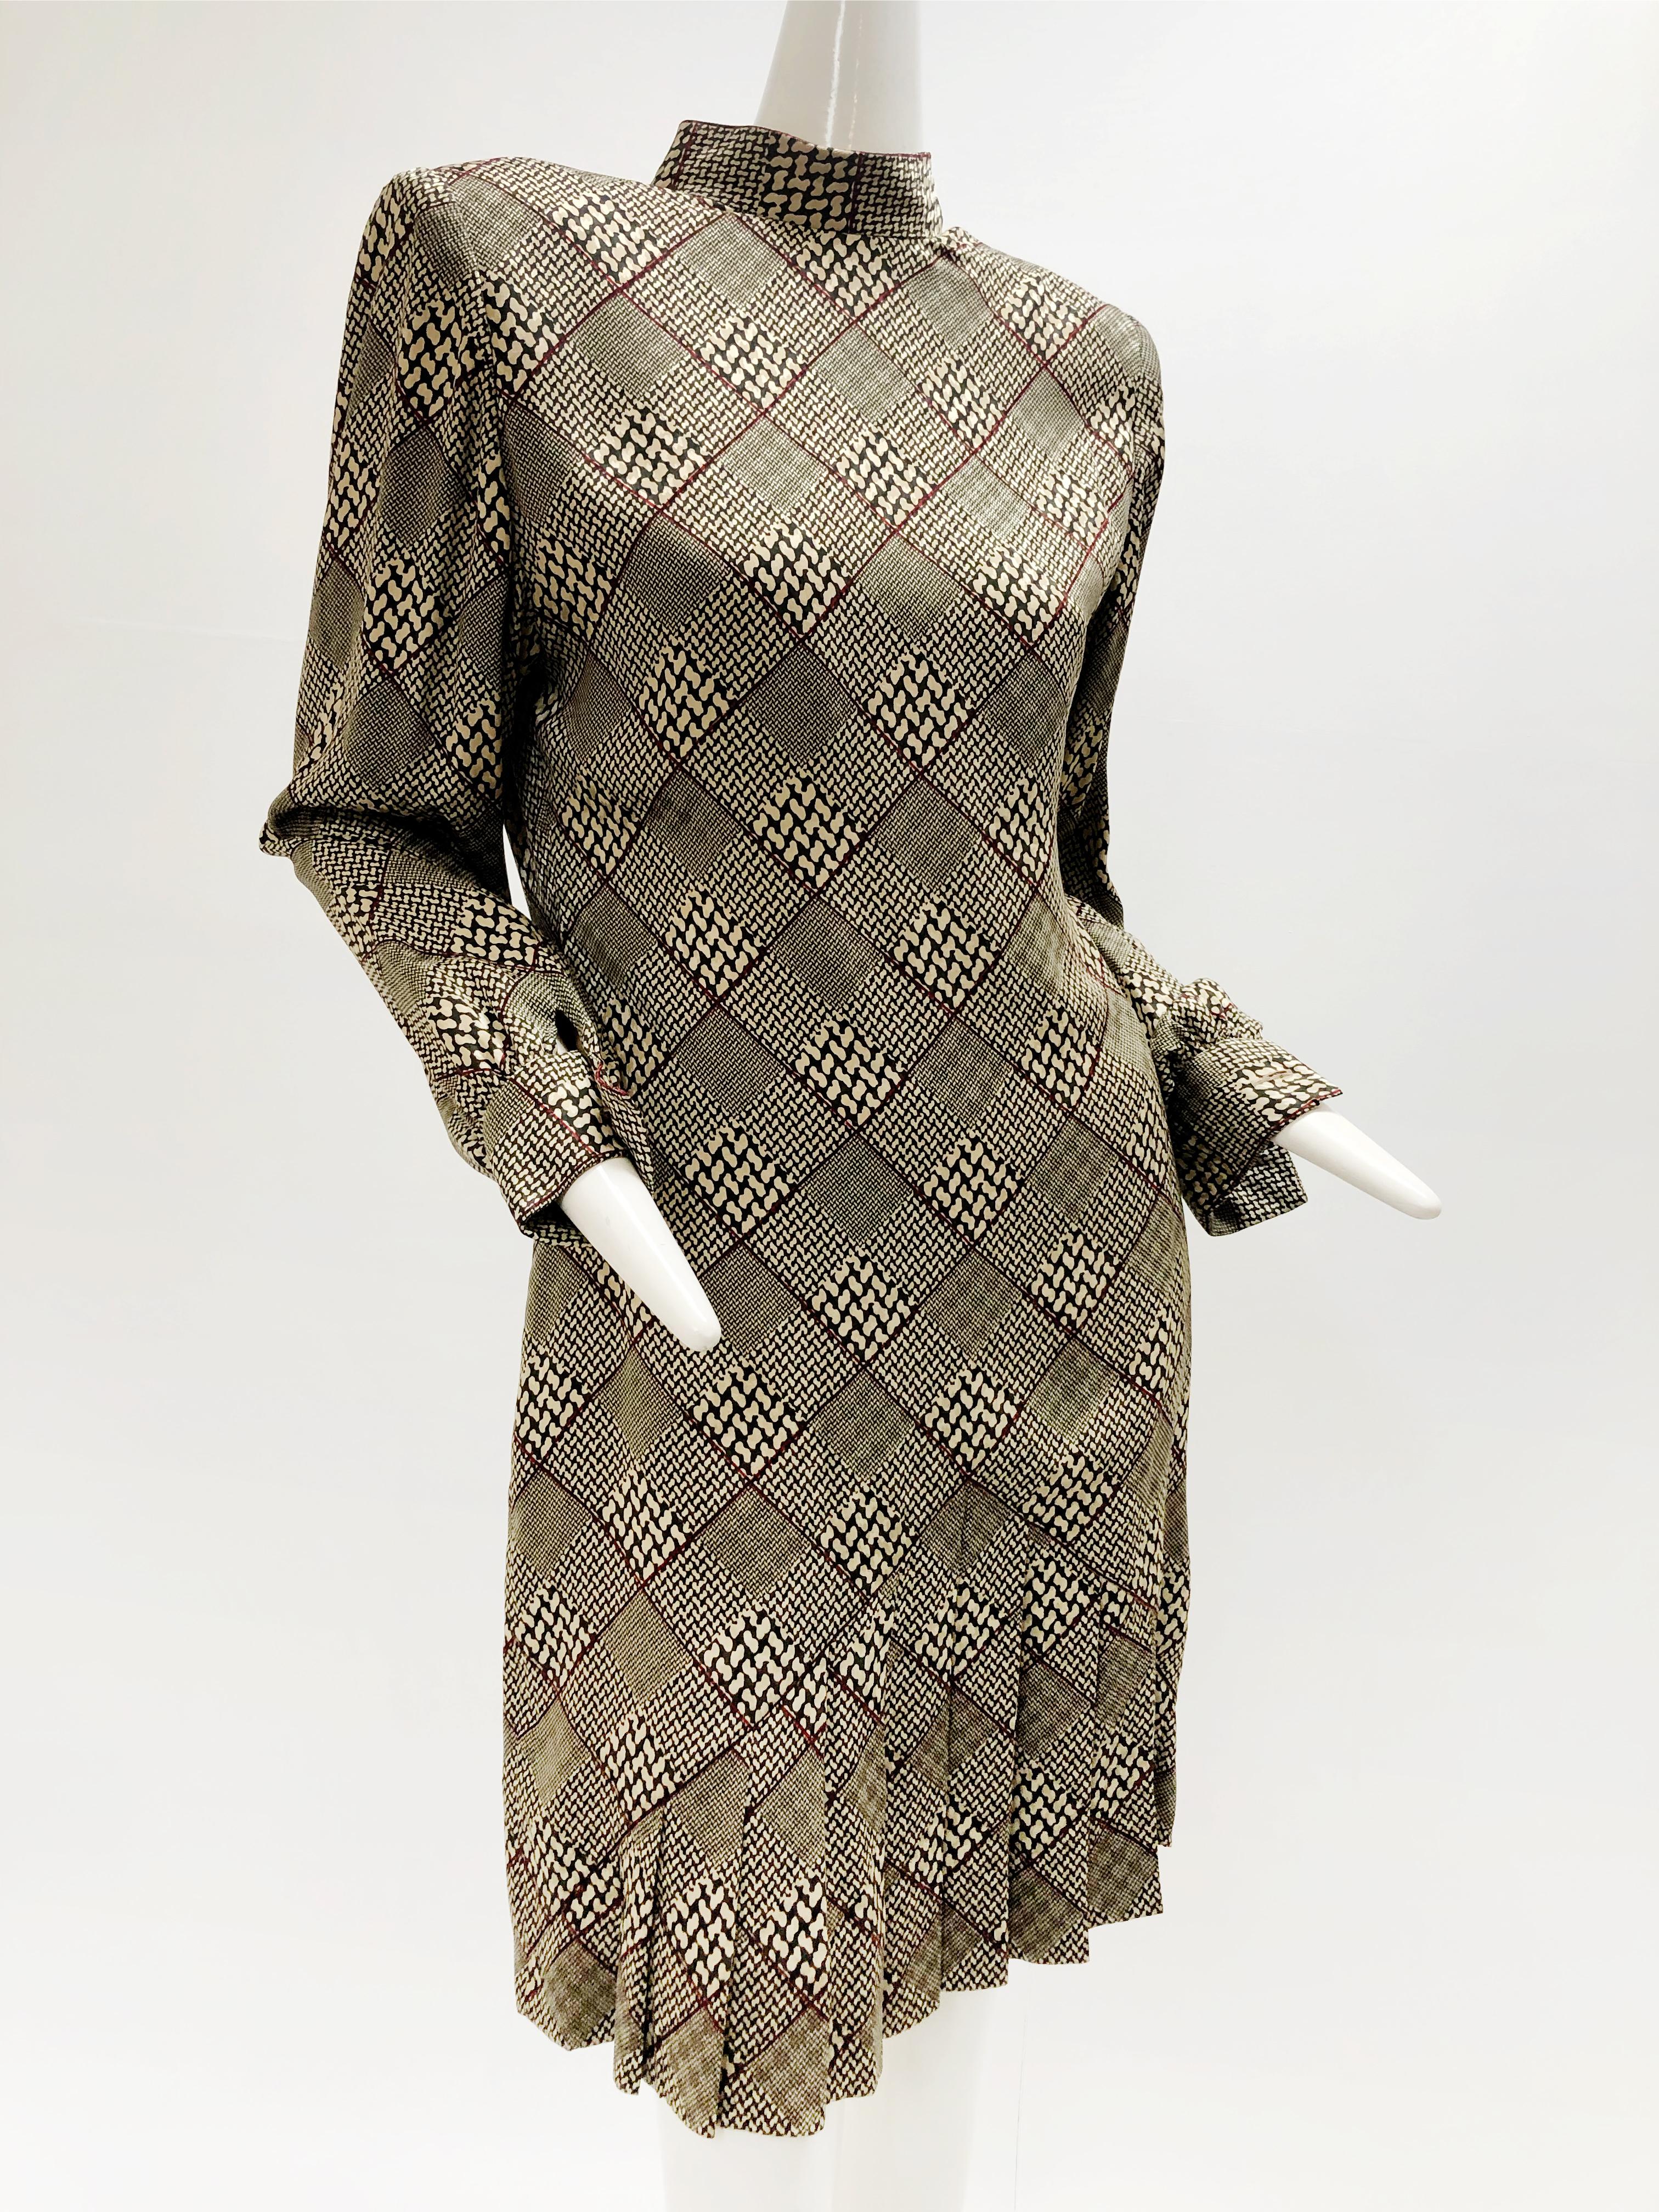 Une jolie veste Galanos en laine pied-de-poule des années 1980 et une mini robe Galanos en soie dans un motif inédit de carreaux de fenêtre en dents de chien (palette de noir, beige et sang de bœuf). Comprend un foulard en mousseline de soie